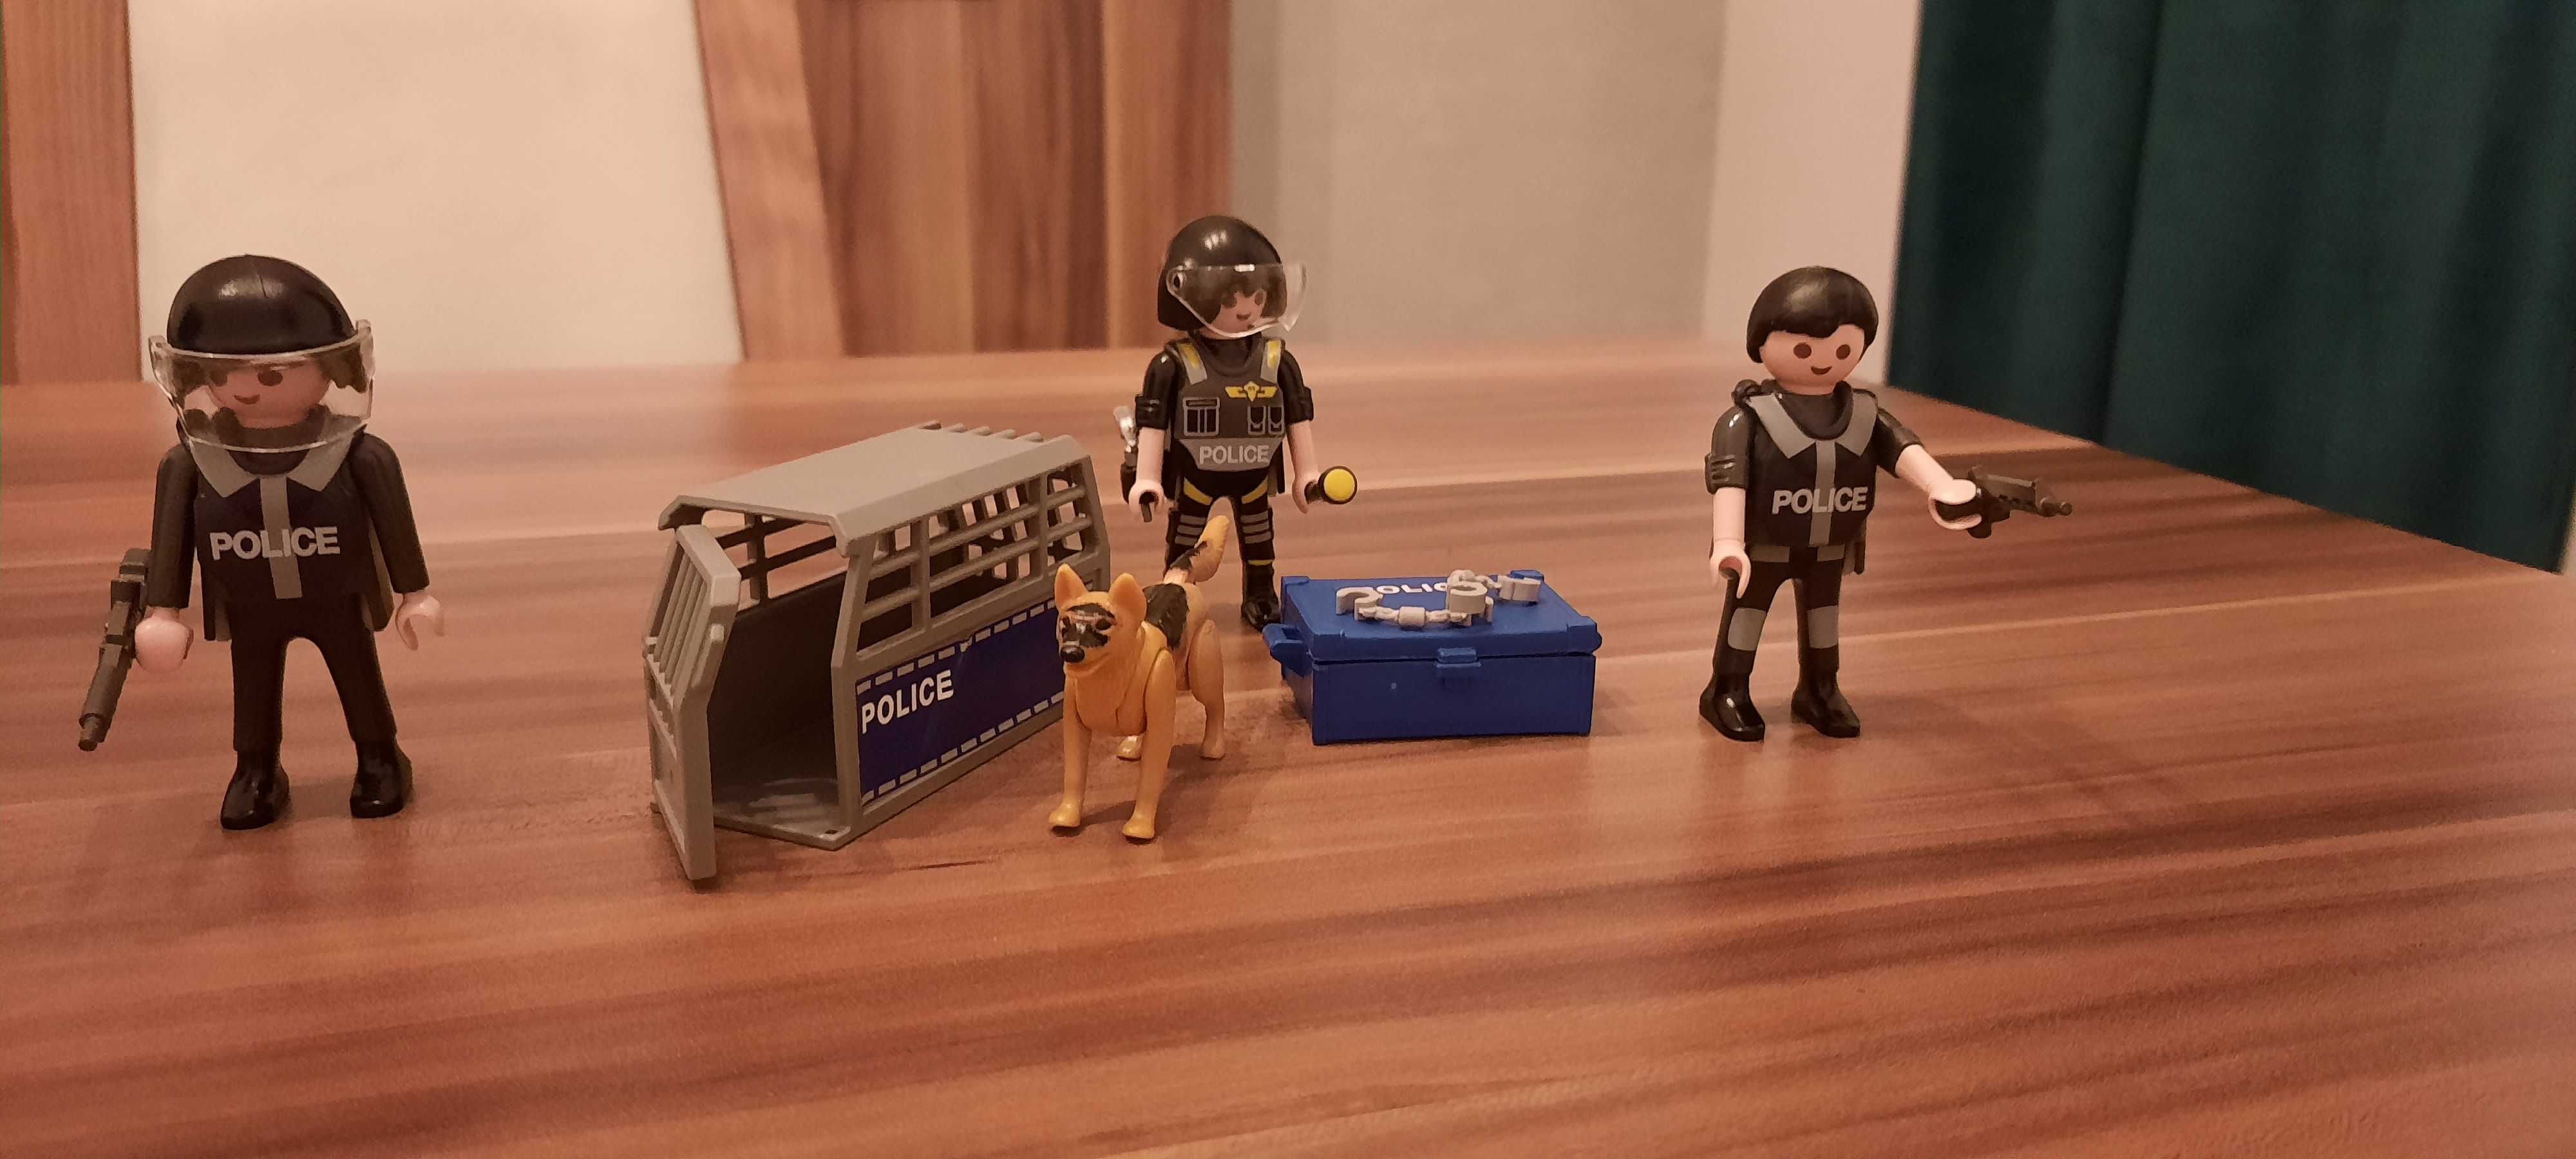 Policja Playmobil